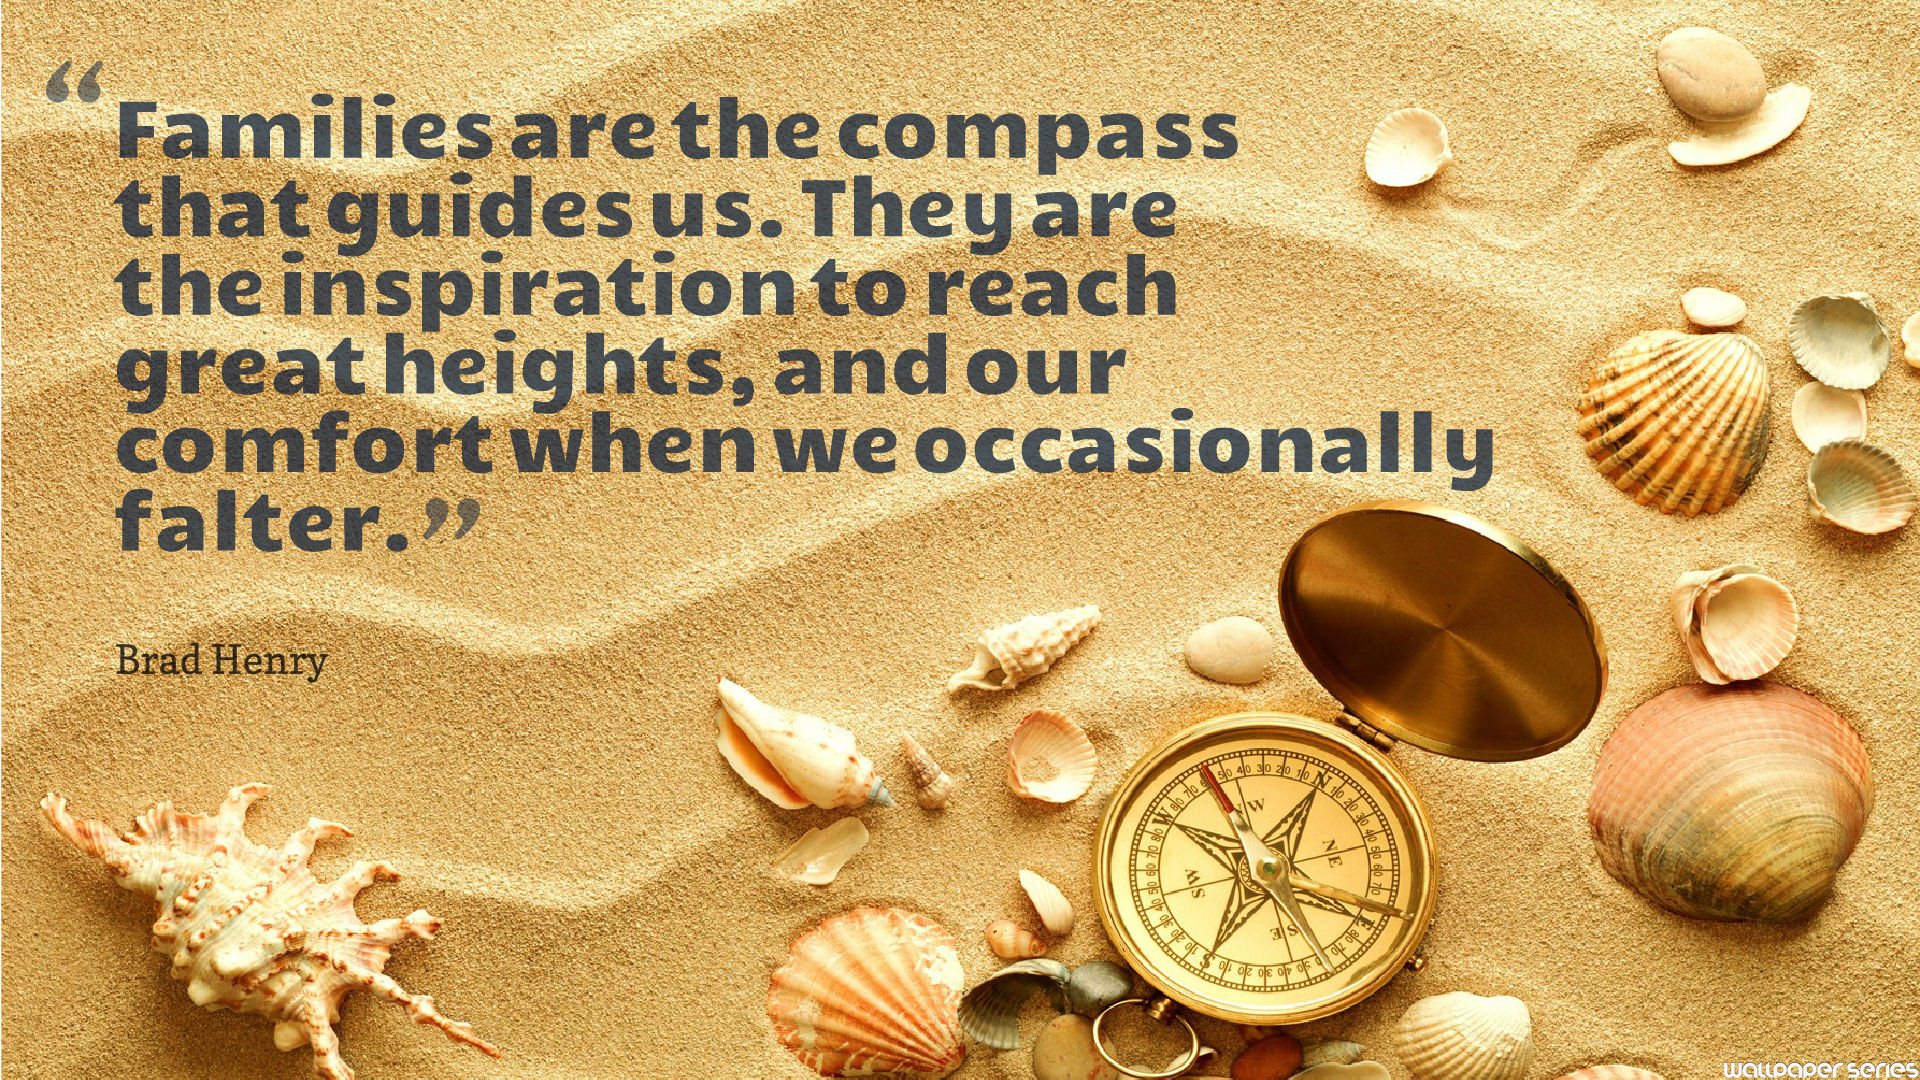 Compass Quotes. QuotesGram